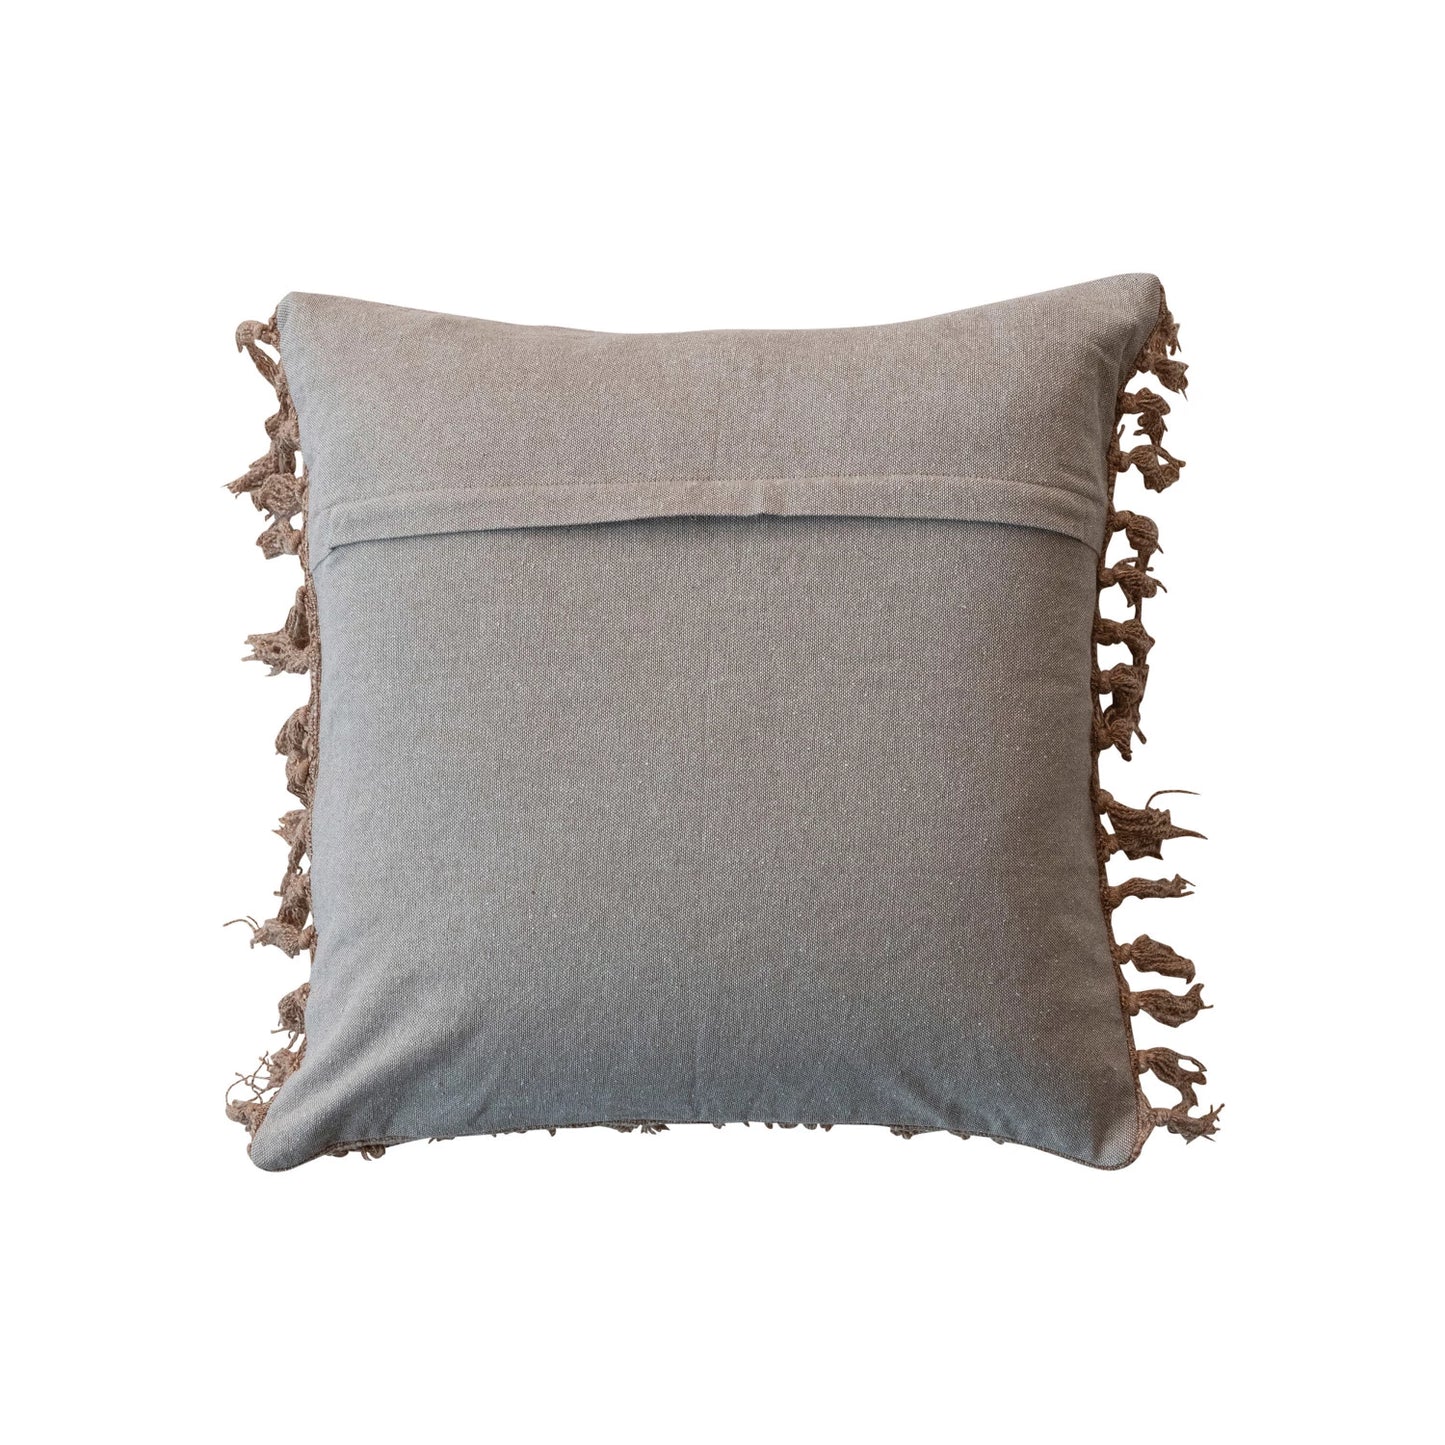 18" Square Stonewashed Woven Cotton Slub Pillow